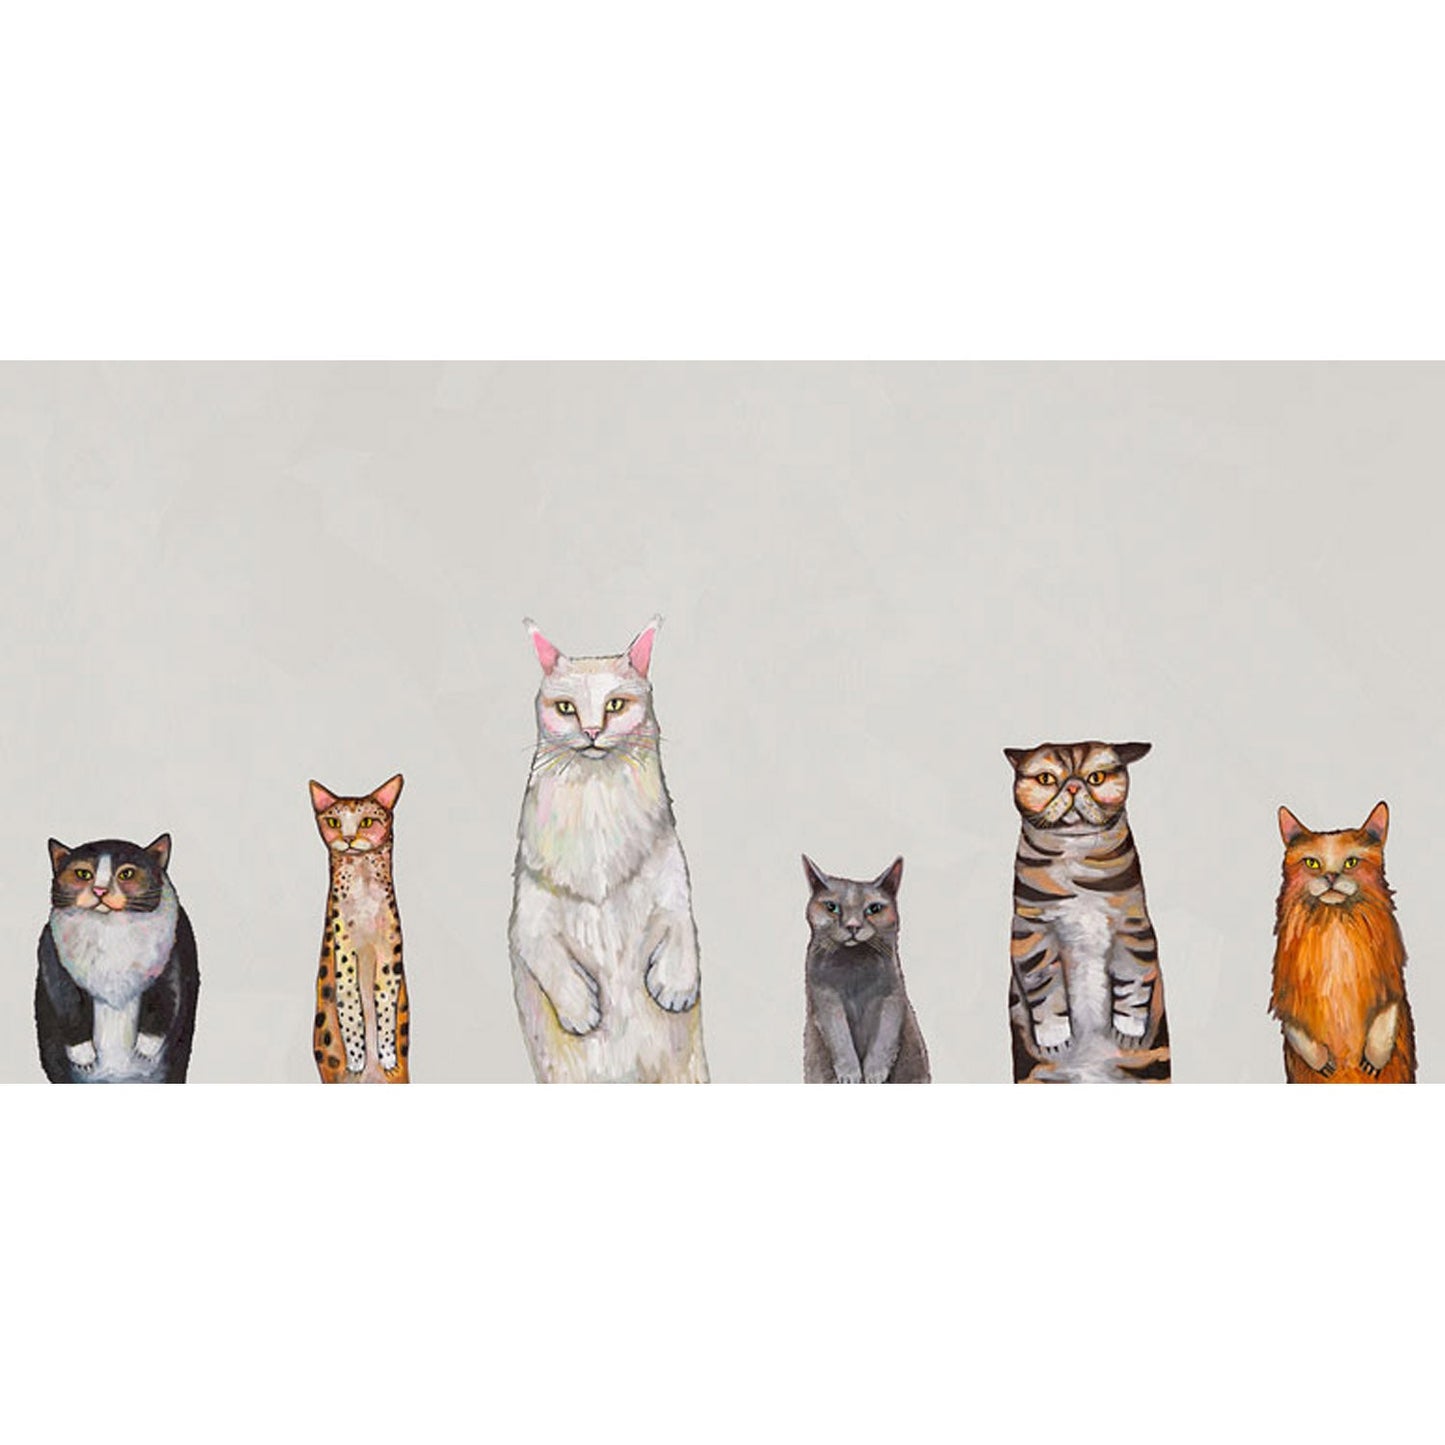 Cats Cats Cats Canvas Wall Art